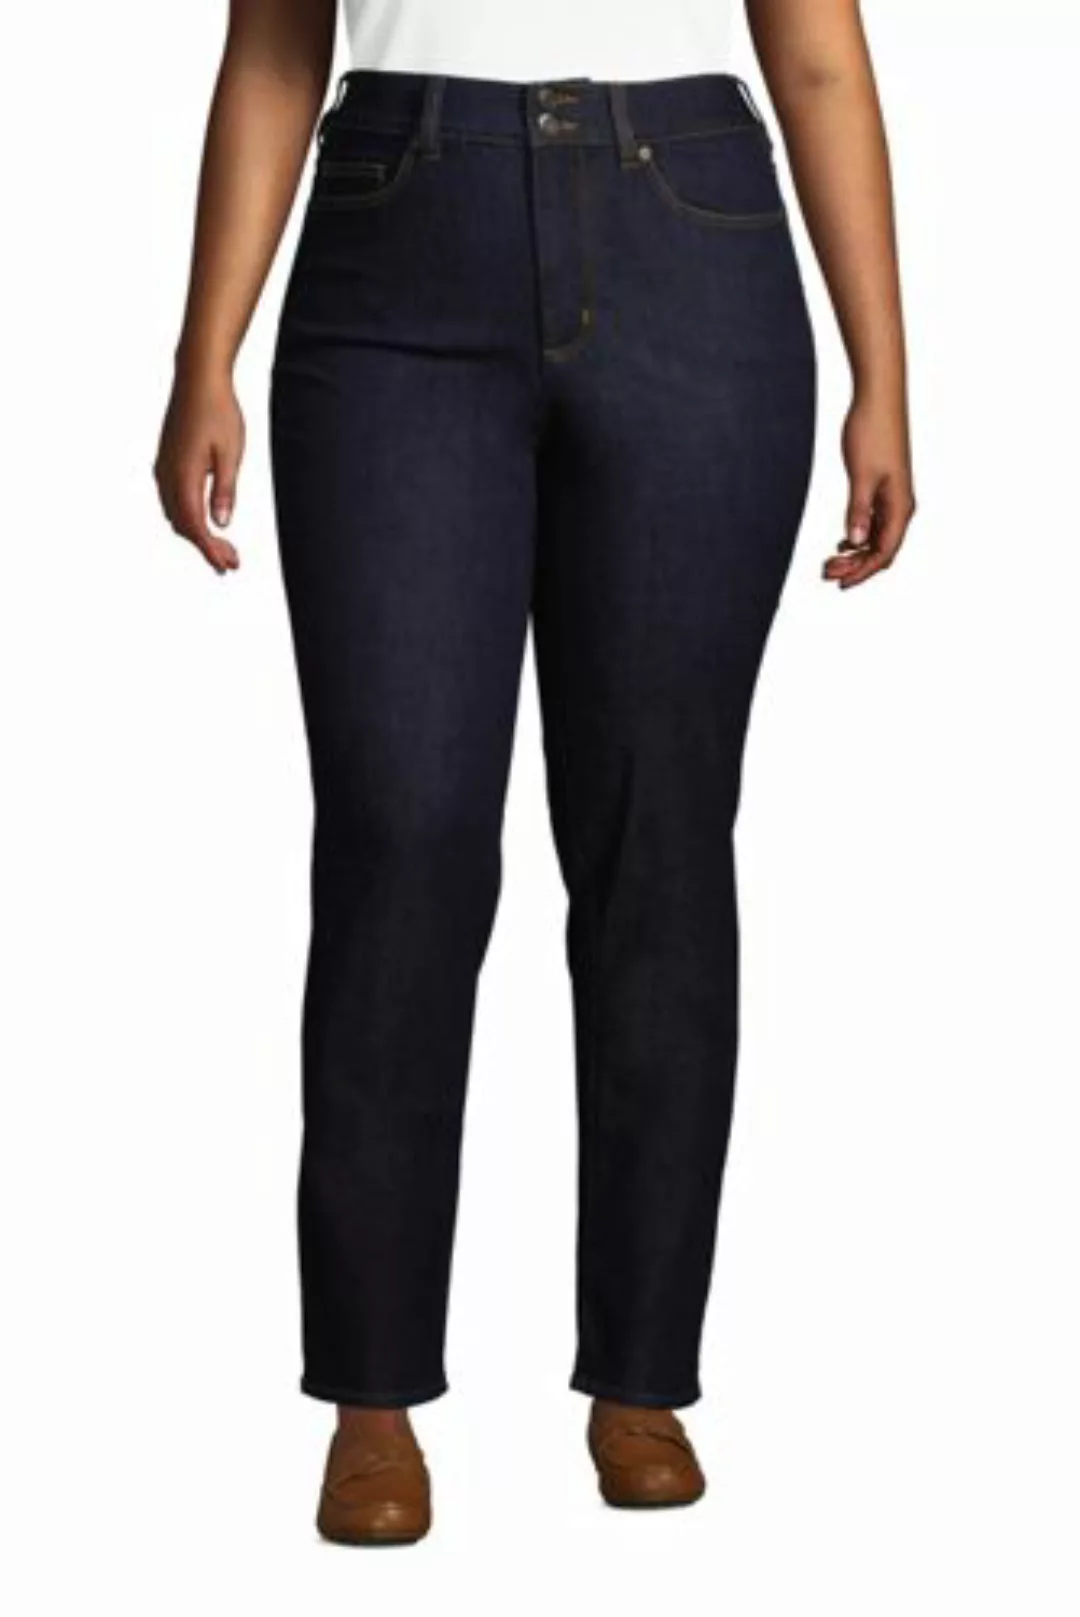 Shaping Jeans Straight Fit High Waist in großen Größen, Damen, Größe: 56 30 günstig online kaufen